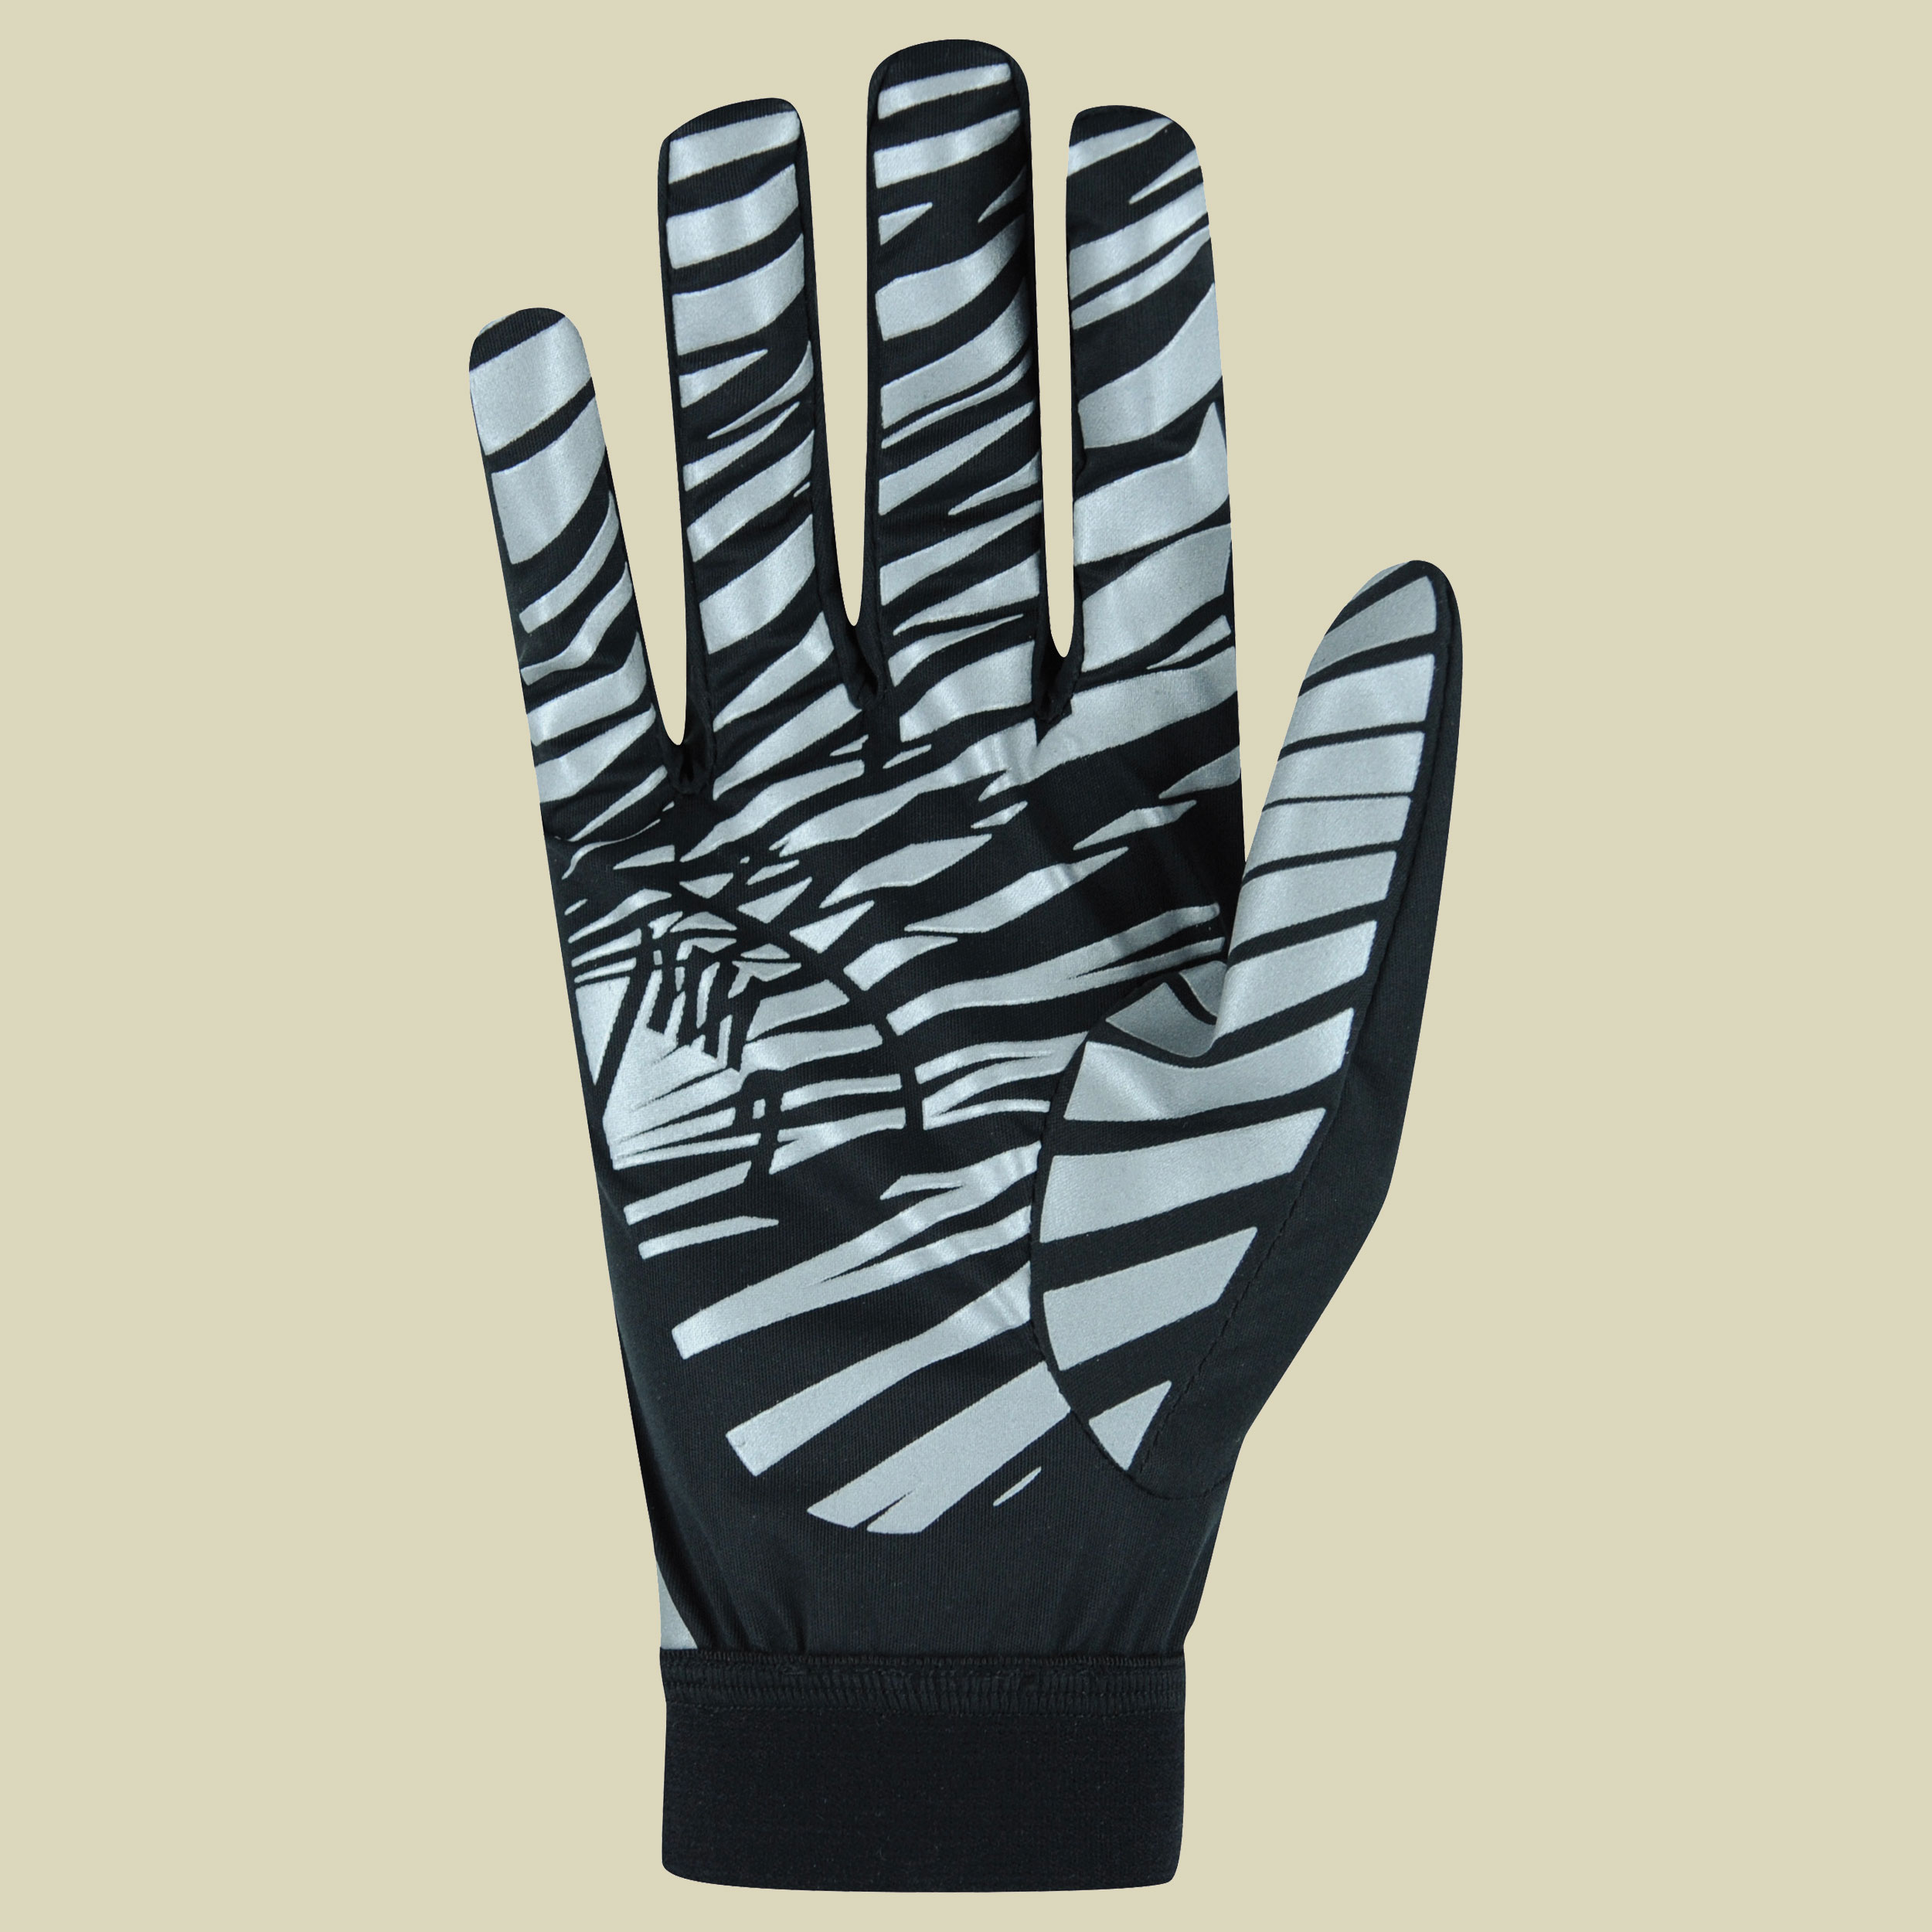 Monte Cover Glove Größe 7,5 Farbe schwarz